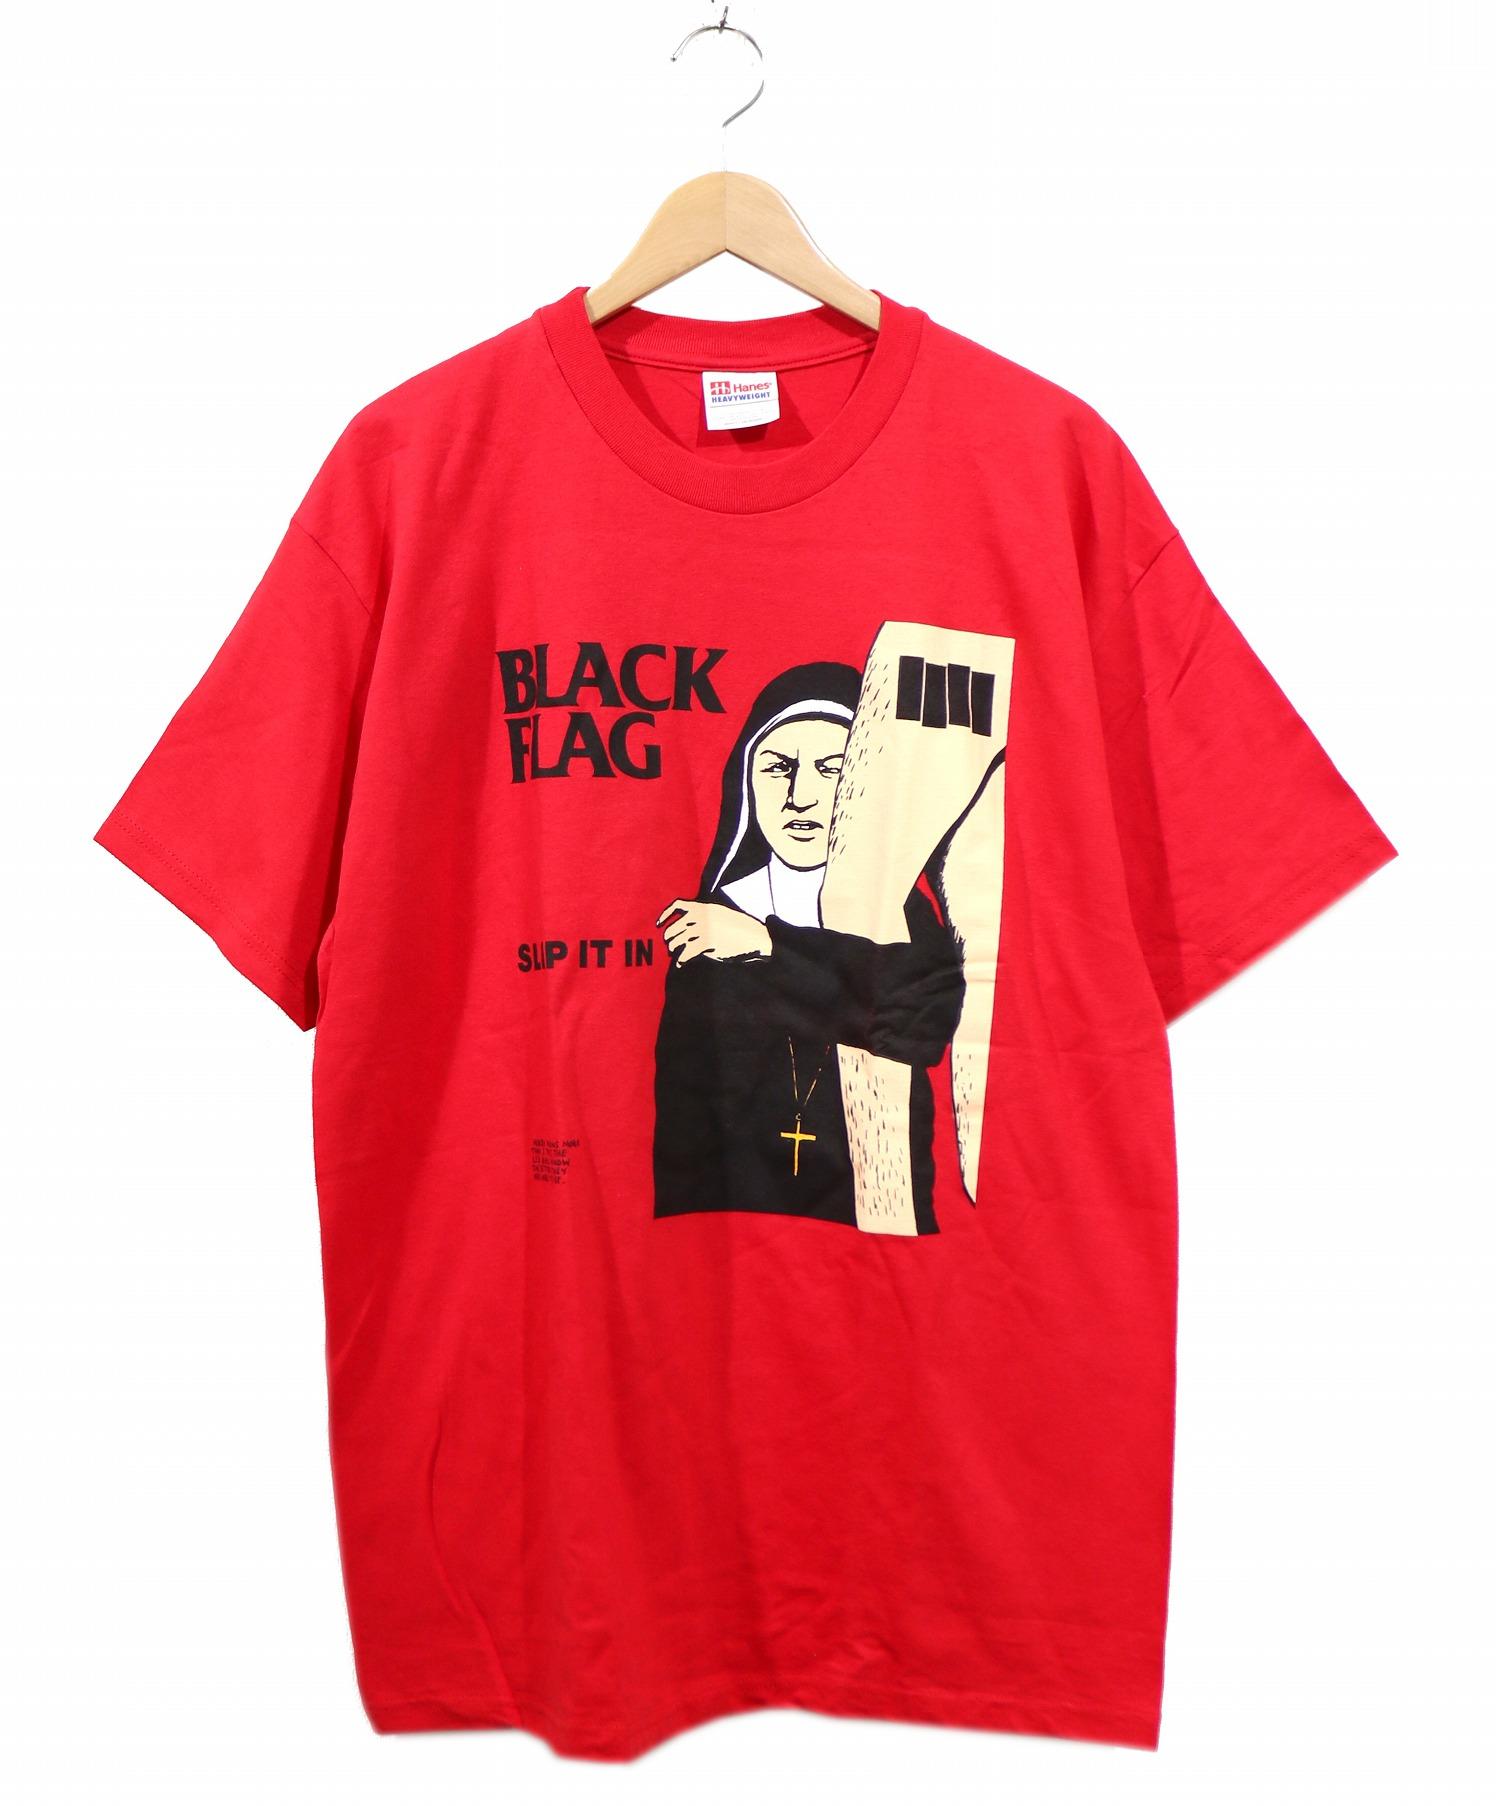 BLACK FLAG (ブラックフラッグ) 90sヴィンテージバンドTシャツ サイズ:L Hanesボディ SLIP IT IN